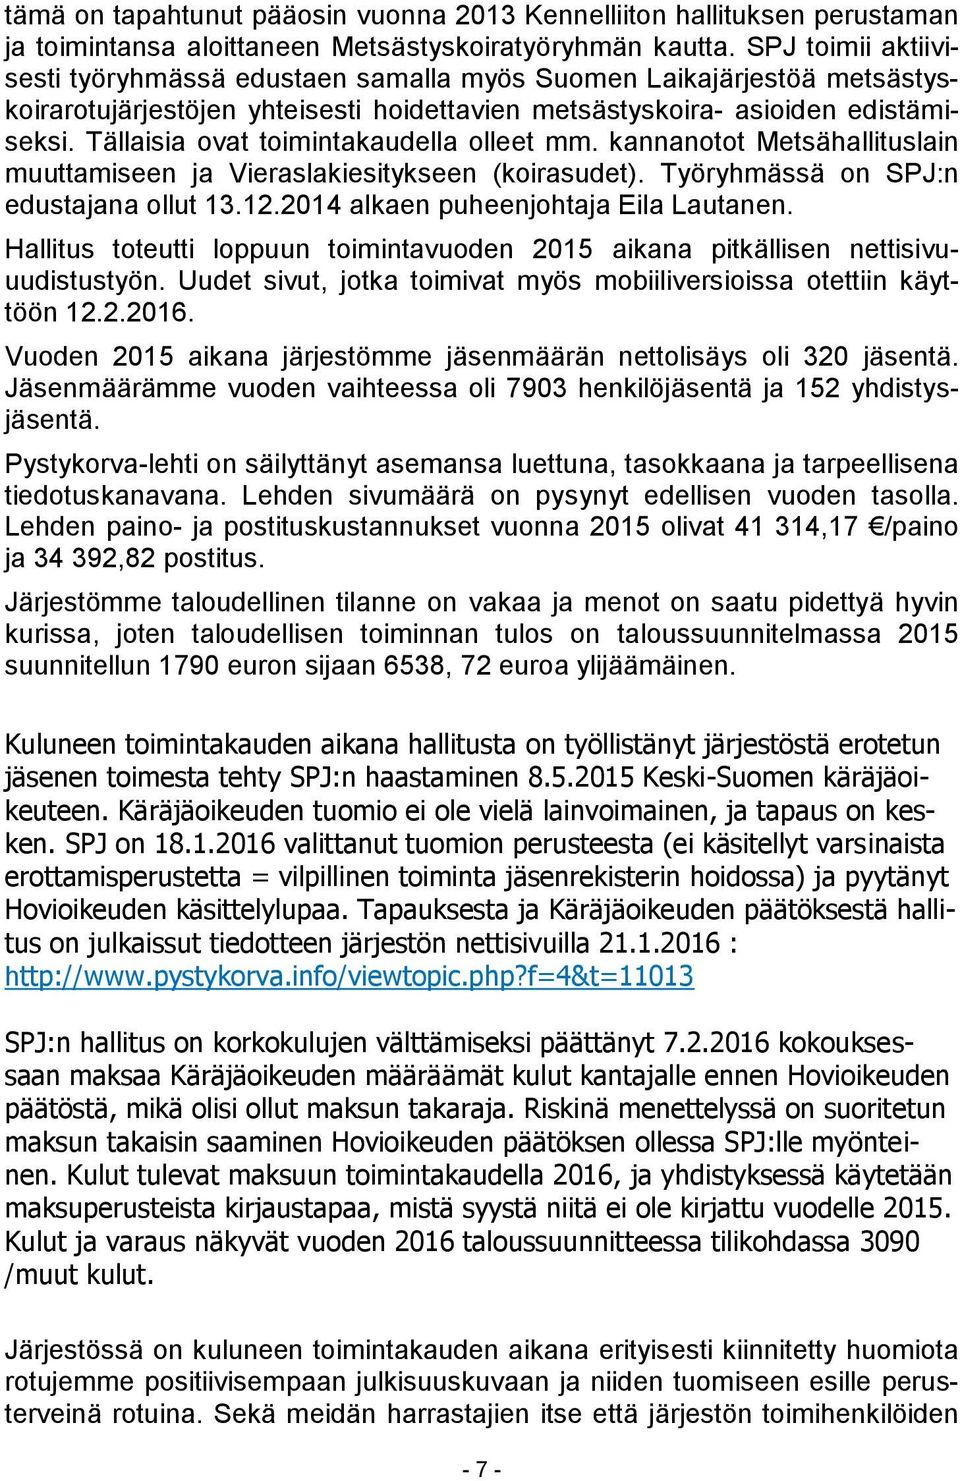 Tällaisia ovat toimintakaudella olleet mm. kannanotot Metsähallituslain muuttamiseen ja Vieraslakiesitykseen (koirasudet). Työryhmässä on SPJ:n edustajana ollut 13.12.